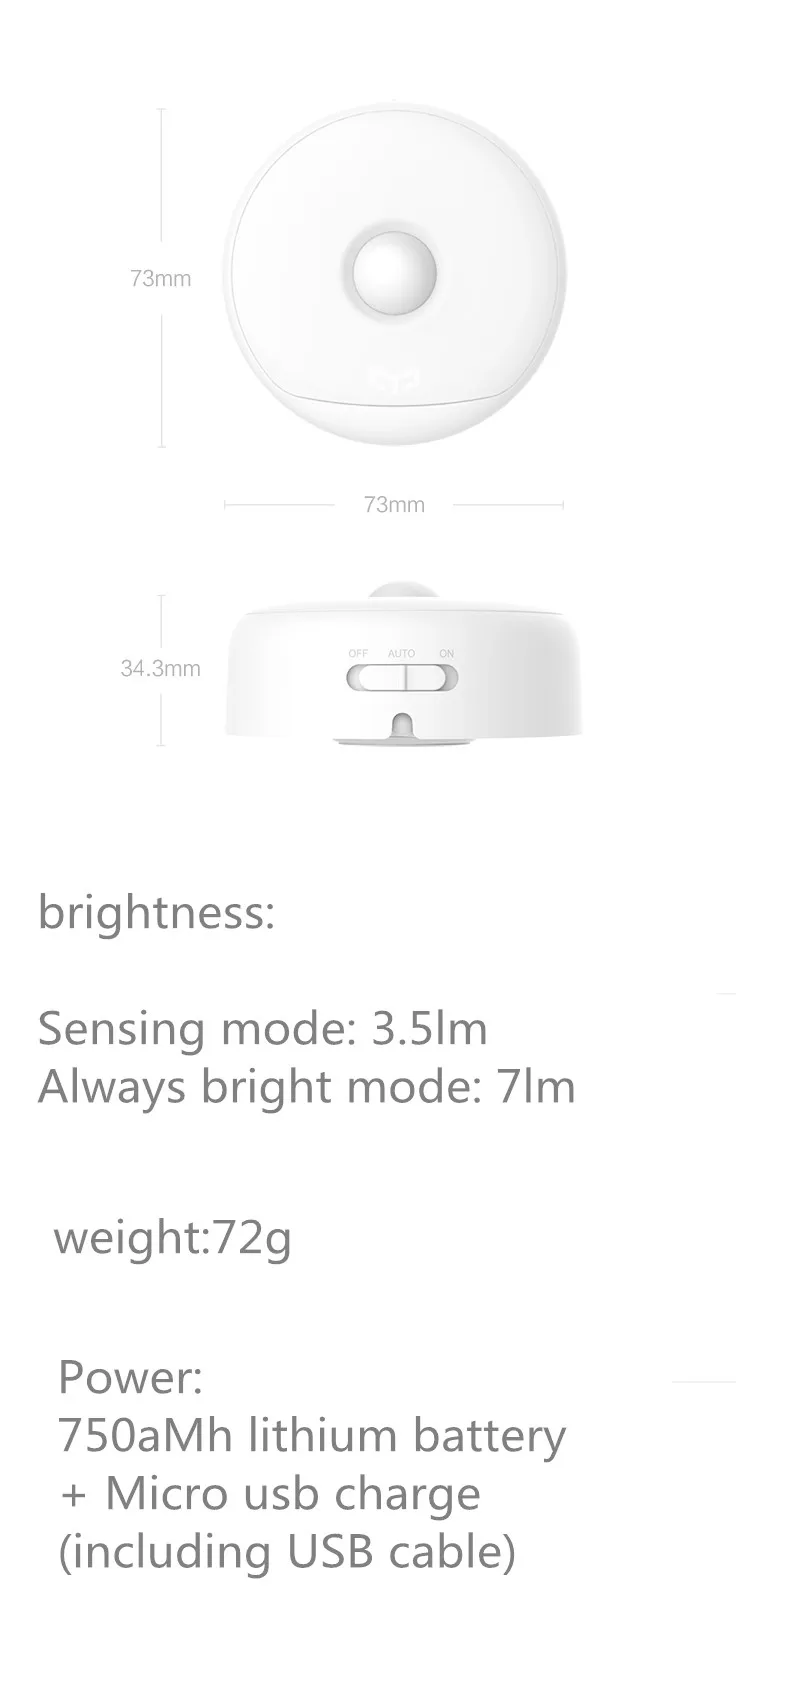 Xiaomi mi jia yee светильник Ночной светильник USB зарядка крючки версия, использовать 120 день один заряд, датчик человеческого тела xiaomi mi умный дом Комплект